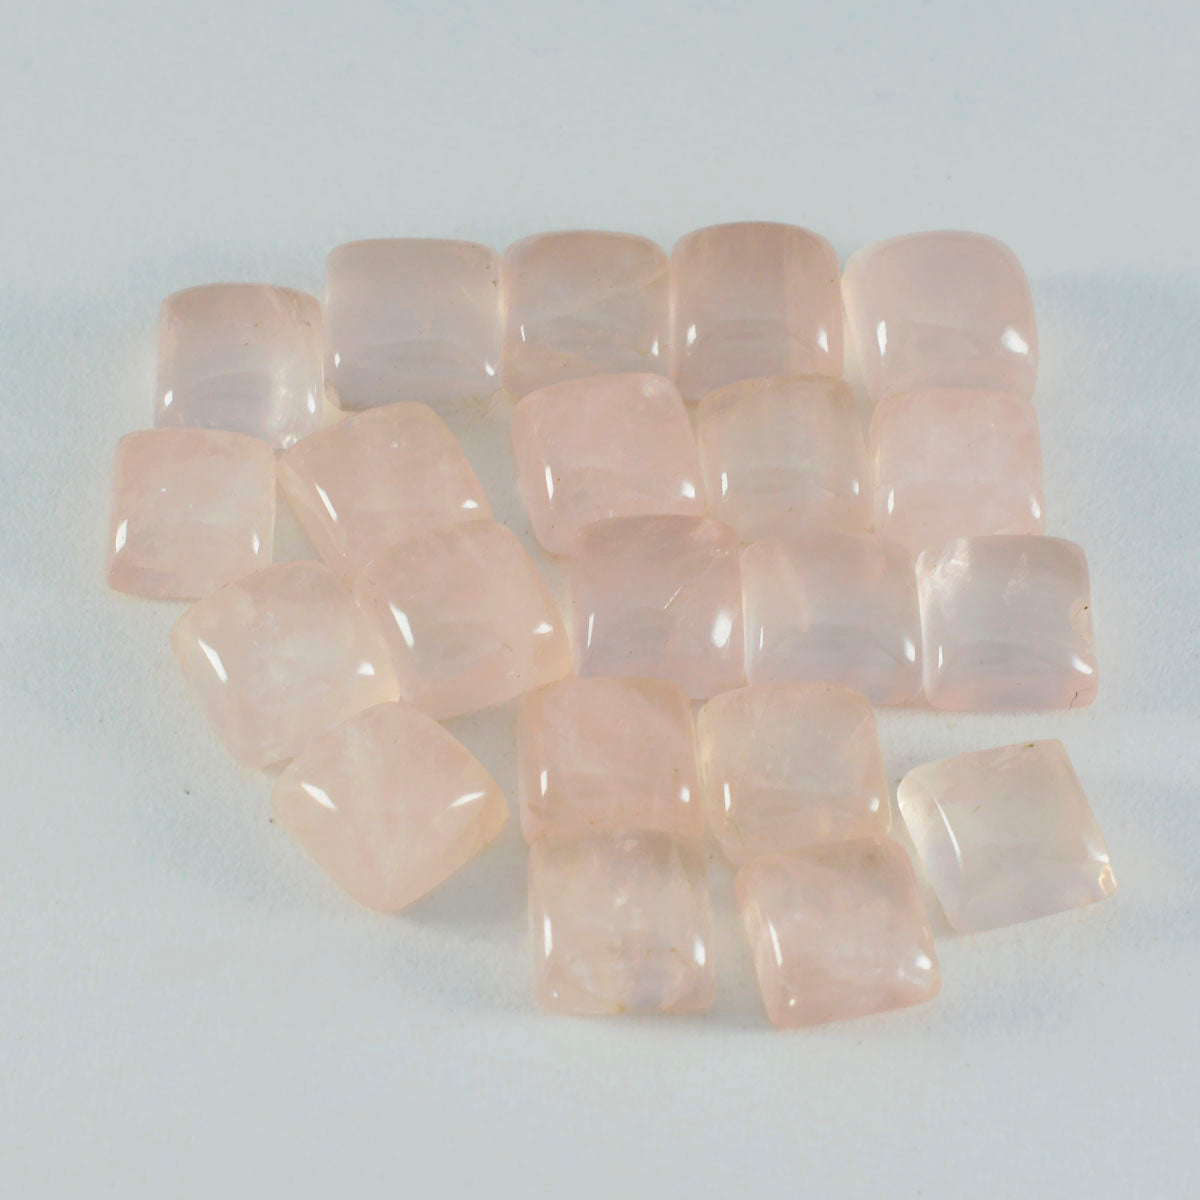 riyogems 1 st rosa rosékvarts cabochon 11x11 mm fyrkantig form underbar kvalitet lös sten